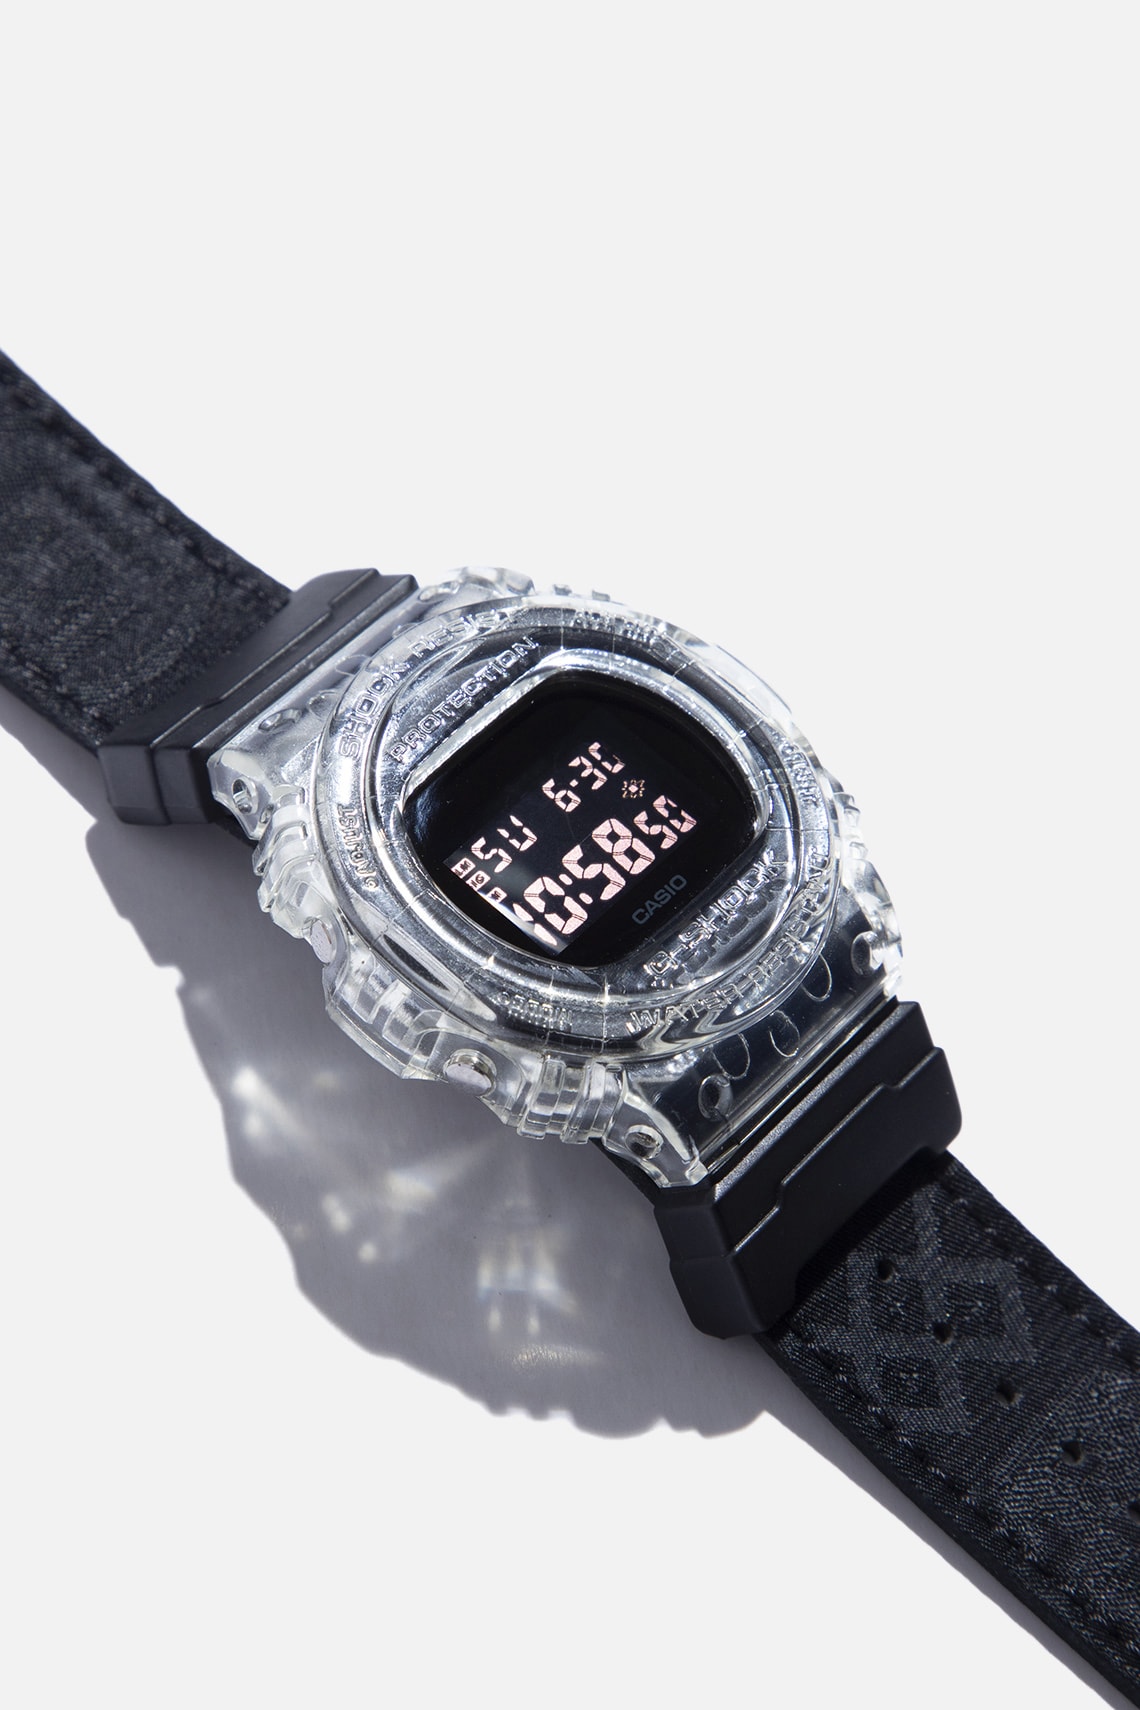 絲綢之路－CLOT x CASIO 聯乘 G-SHOCK DW-5750 限量腕錶